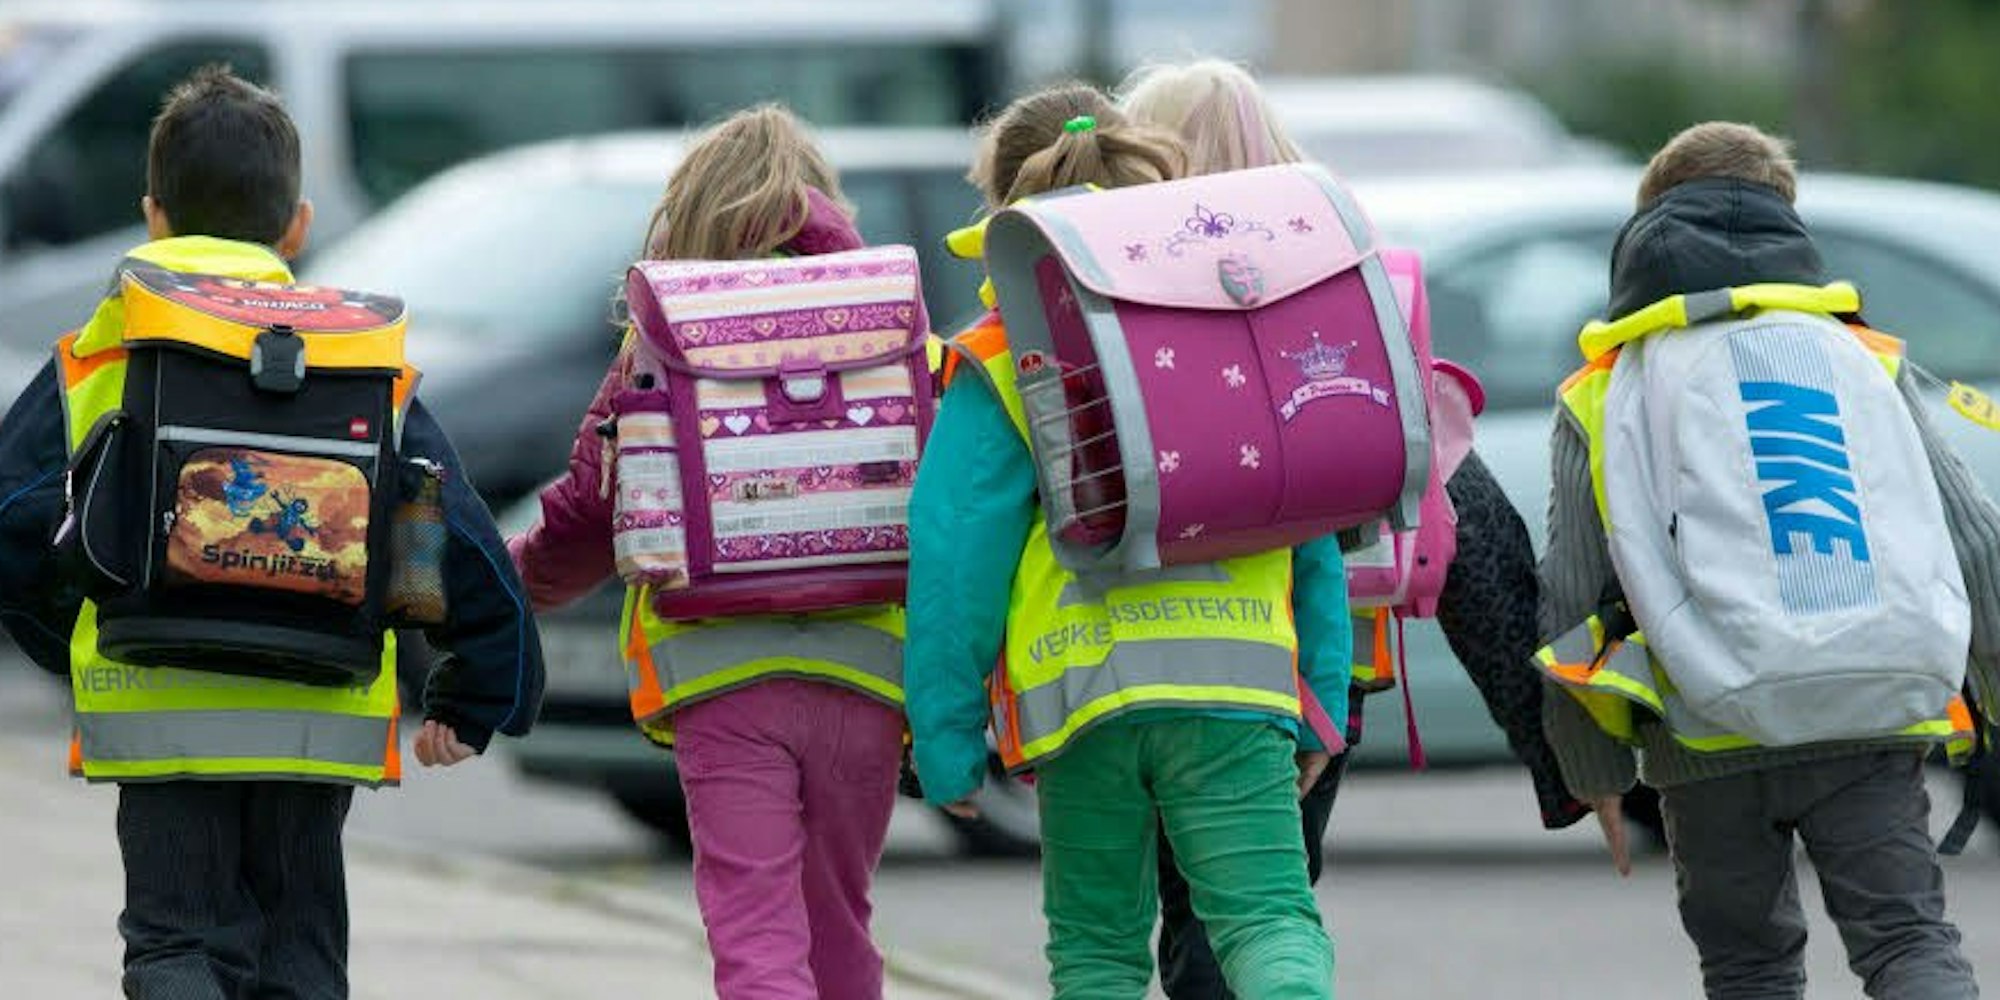 Viele Eltern bringen ihre Kinder direkt bis zum Schultor. Das sorgt vielerorts für Verkehrschaos.